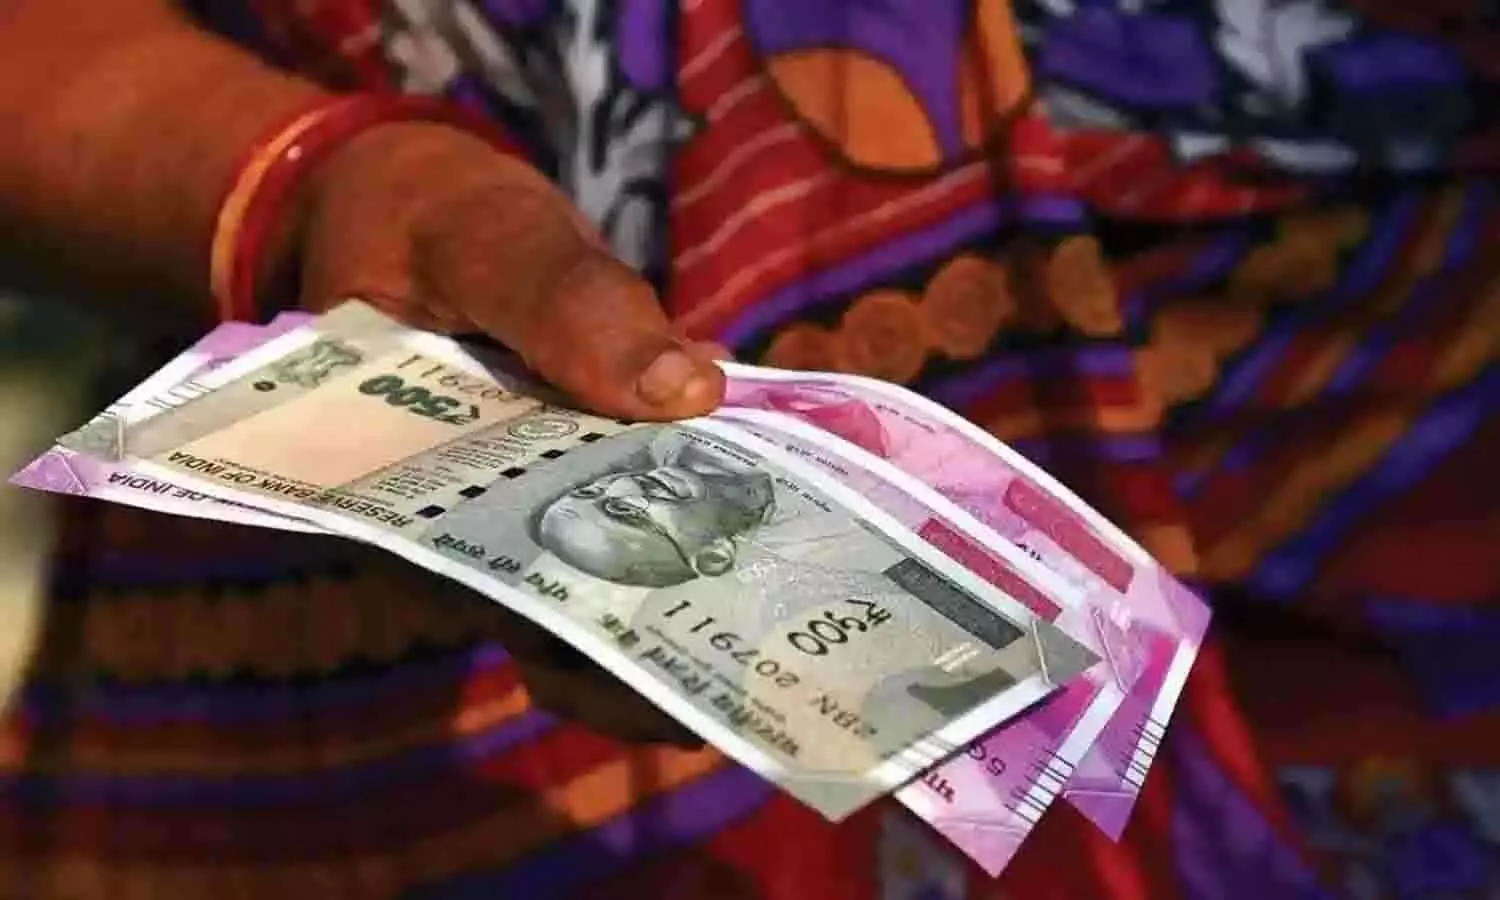 राज्य सरकार का बड़ा ऐलान, महिलाओ को हर महीने 1000 रूपए देने का ऐलान, 7 हजार करोड़ का बजट जारी, ऐसे मिलेगा लाभ